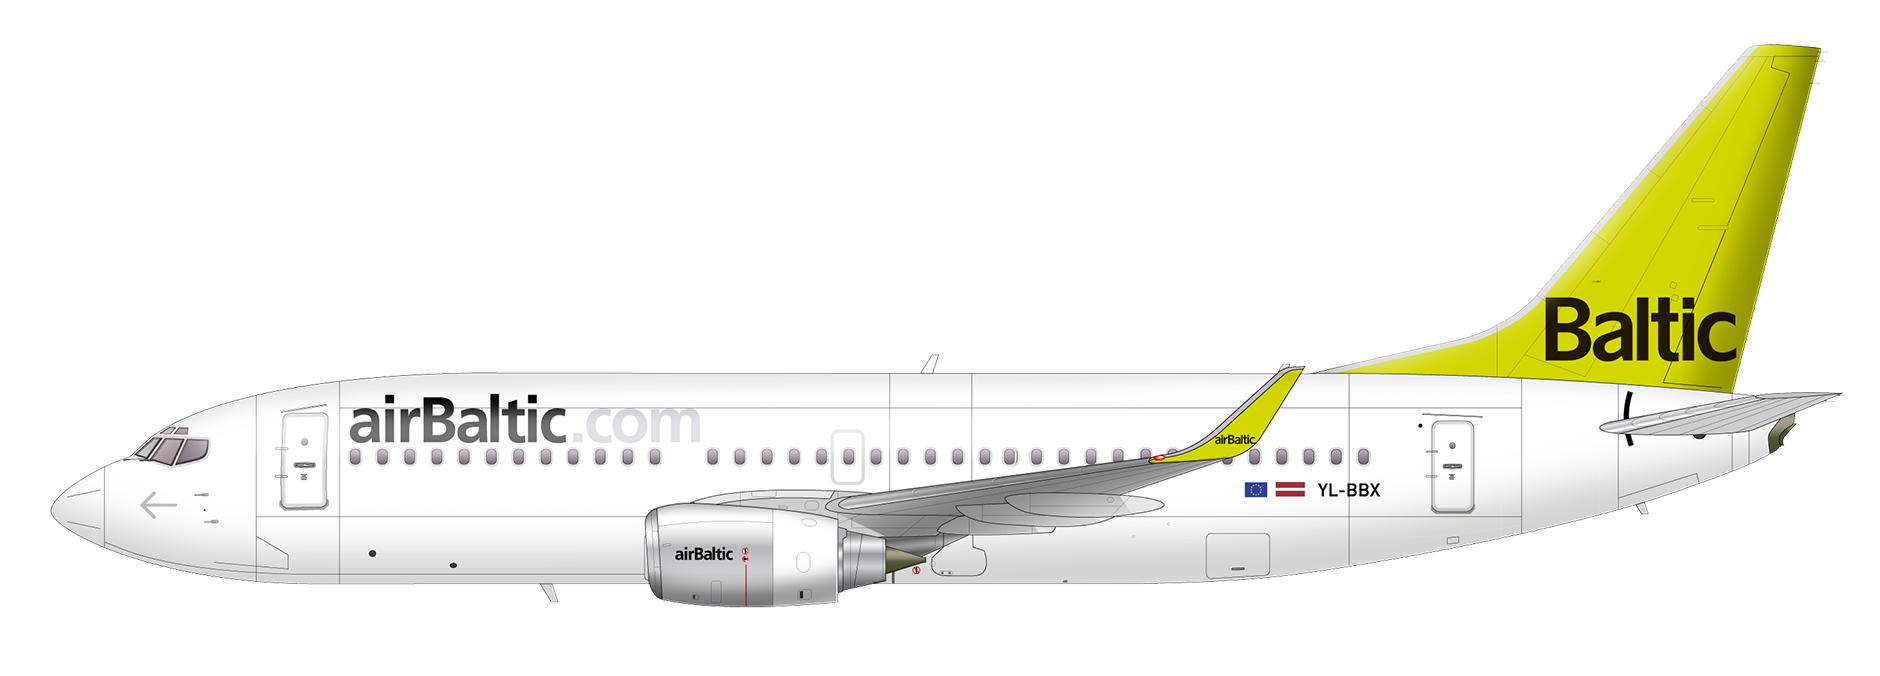 Airbaltic — официальный сайт пассажиров